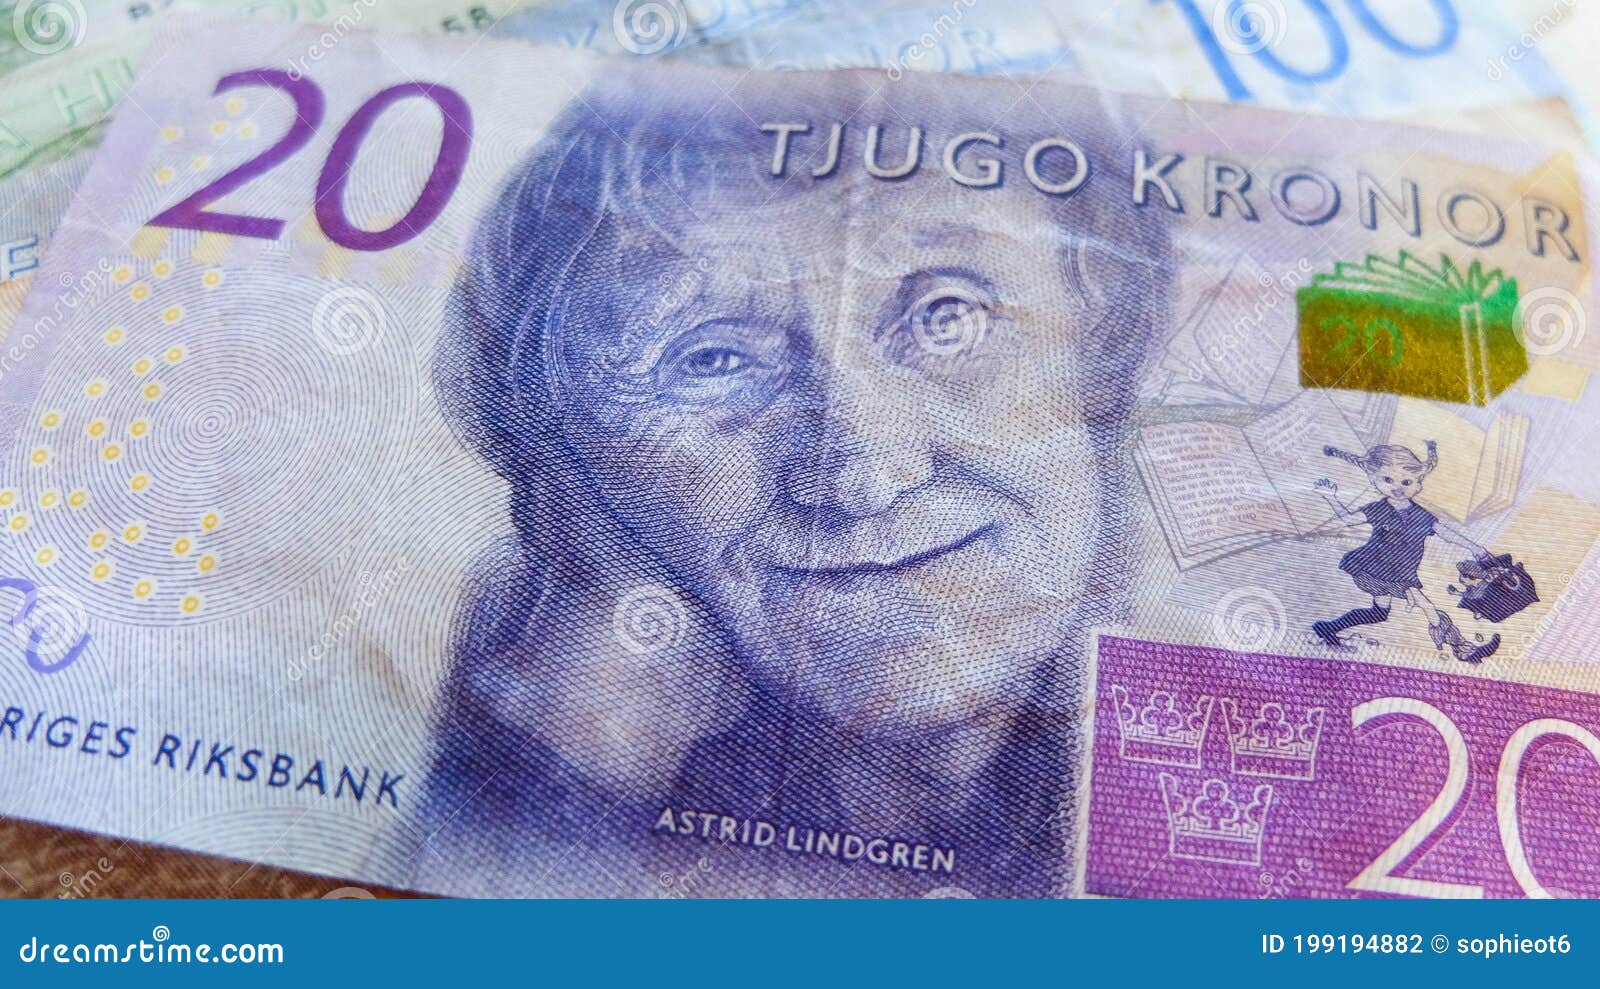 Шведская крона к евро на сегодня. Шведская крона купюры. 10 Миллионов шведских крон в рублях. Портрет купюры шведских крон 20 до 2016. 99 Шведских крон.